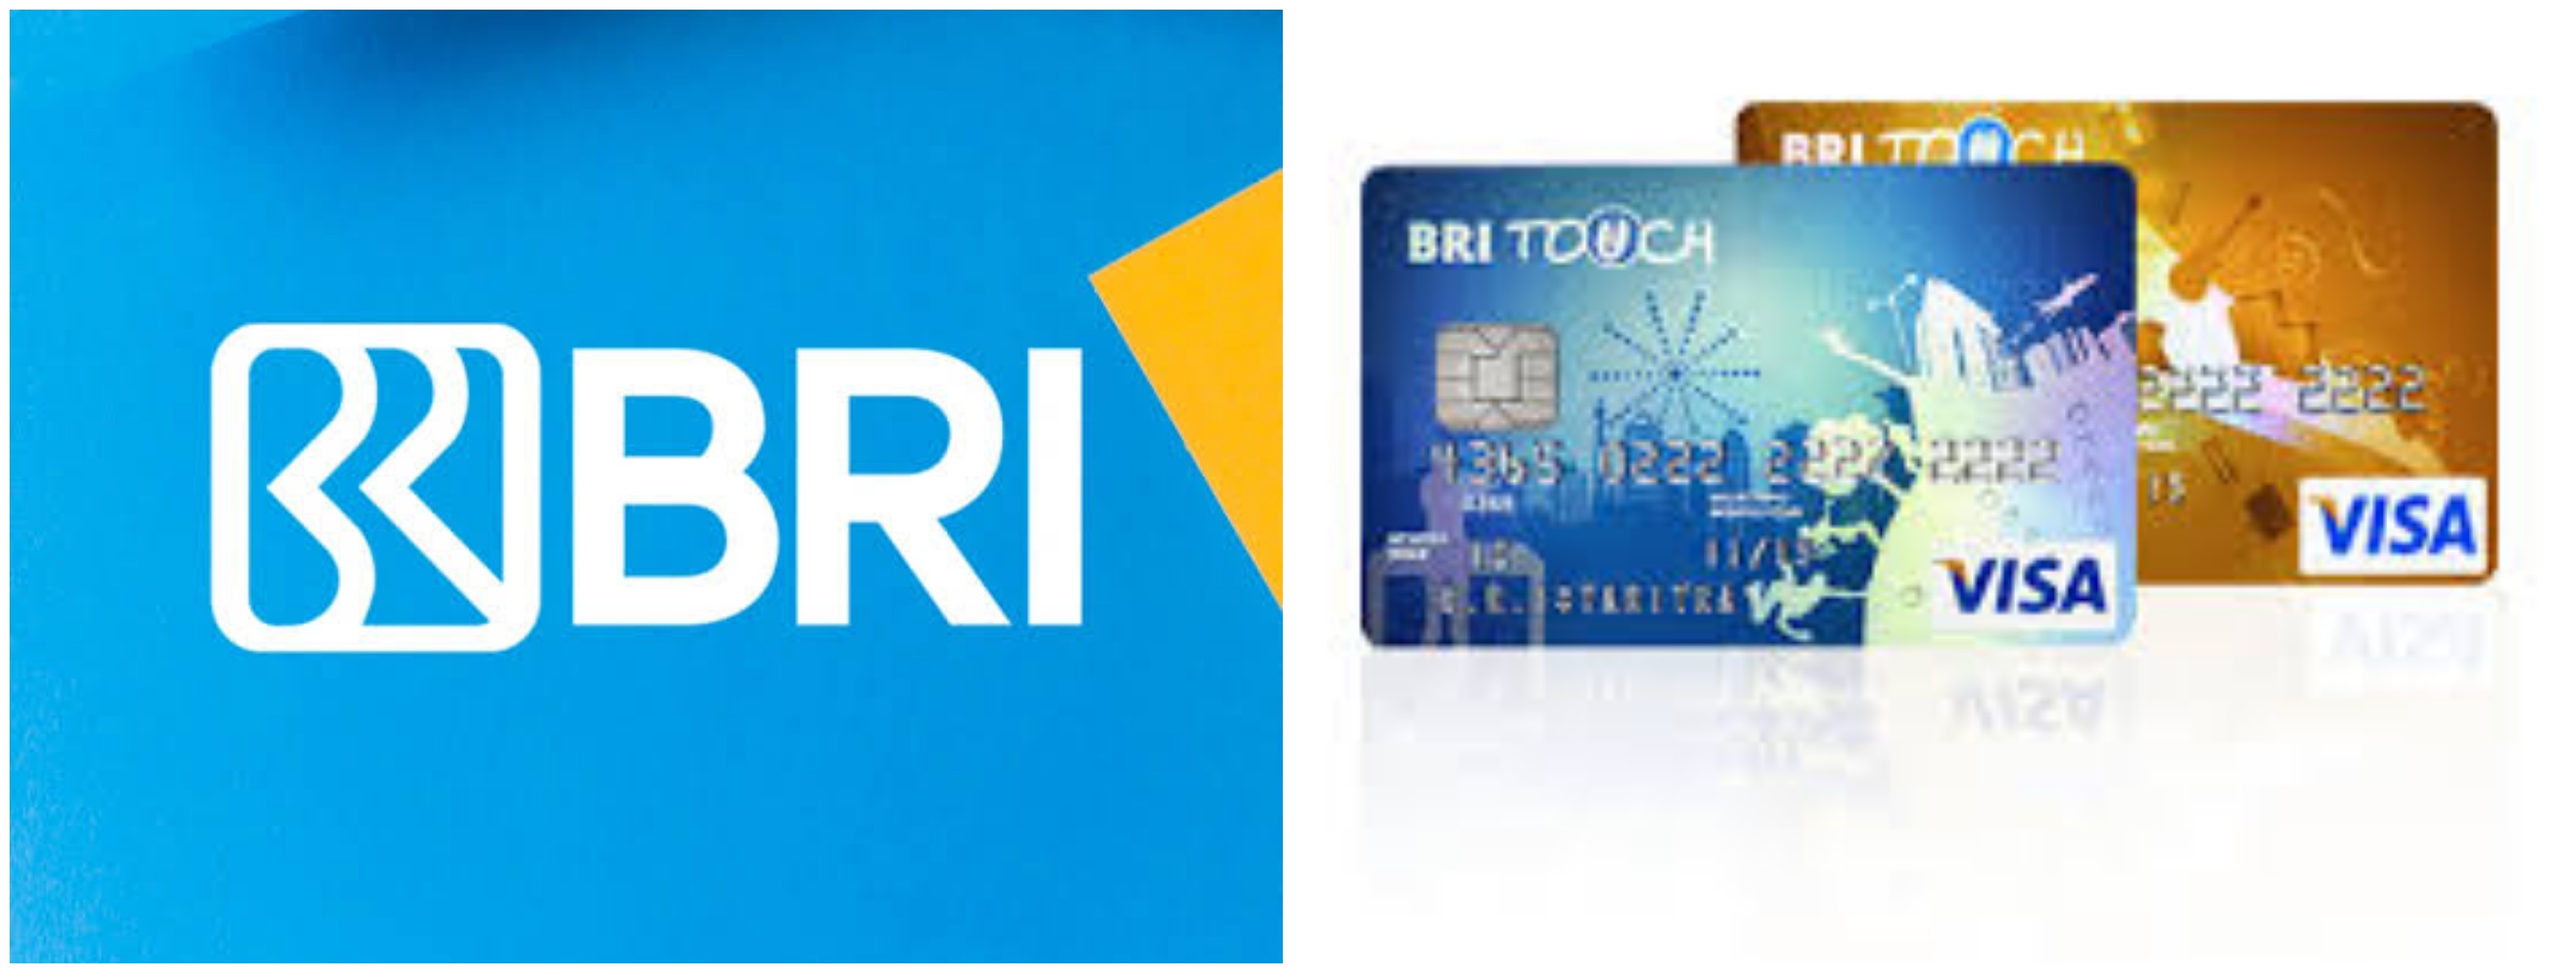 7 Cara membuat kartu kredit BRI secara online, nggak perlu ke bank